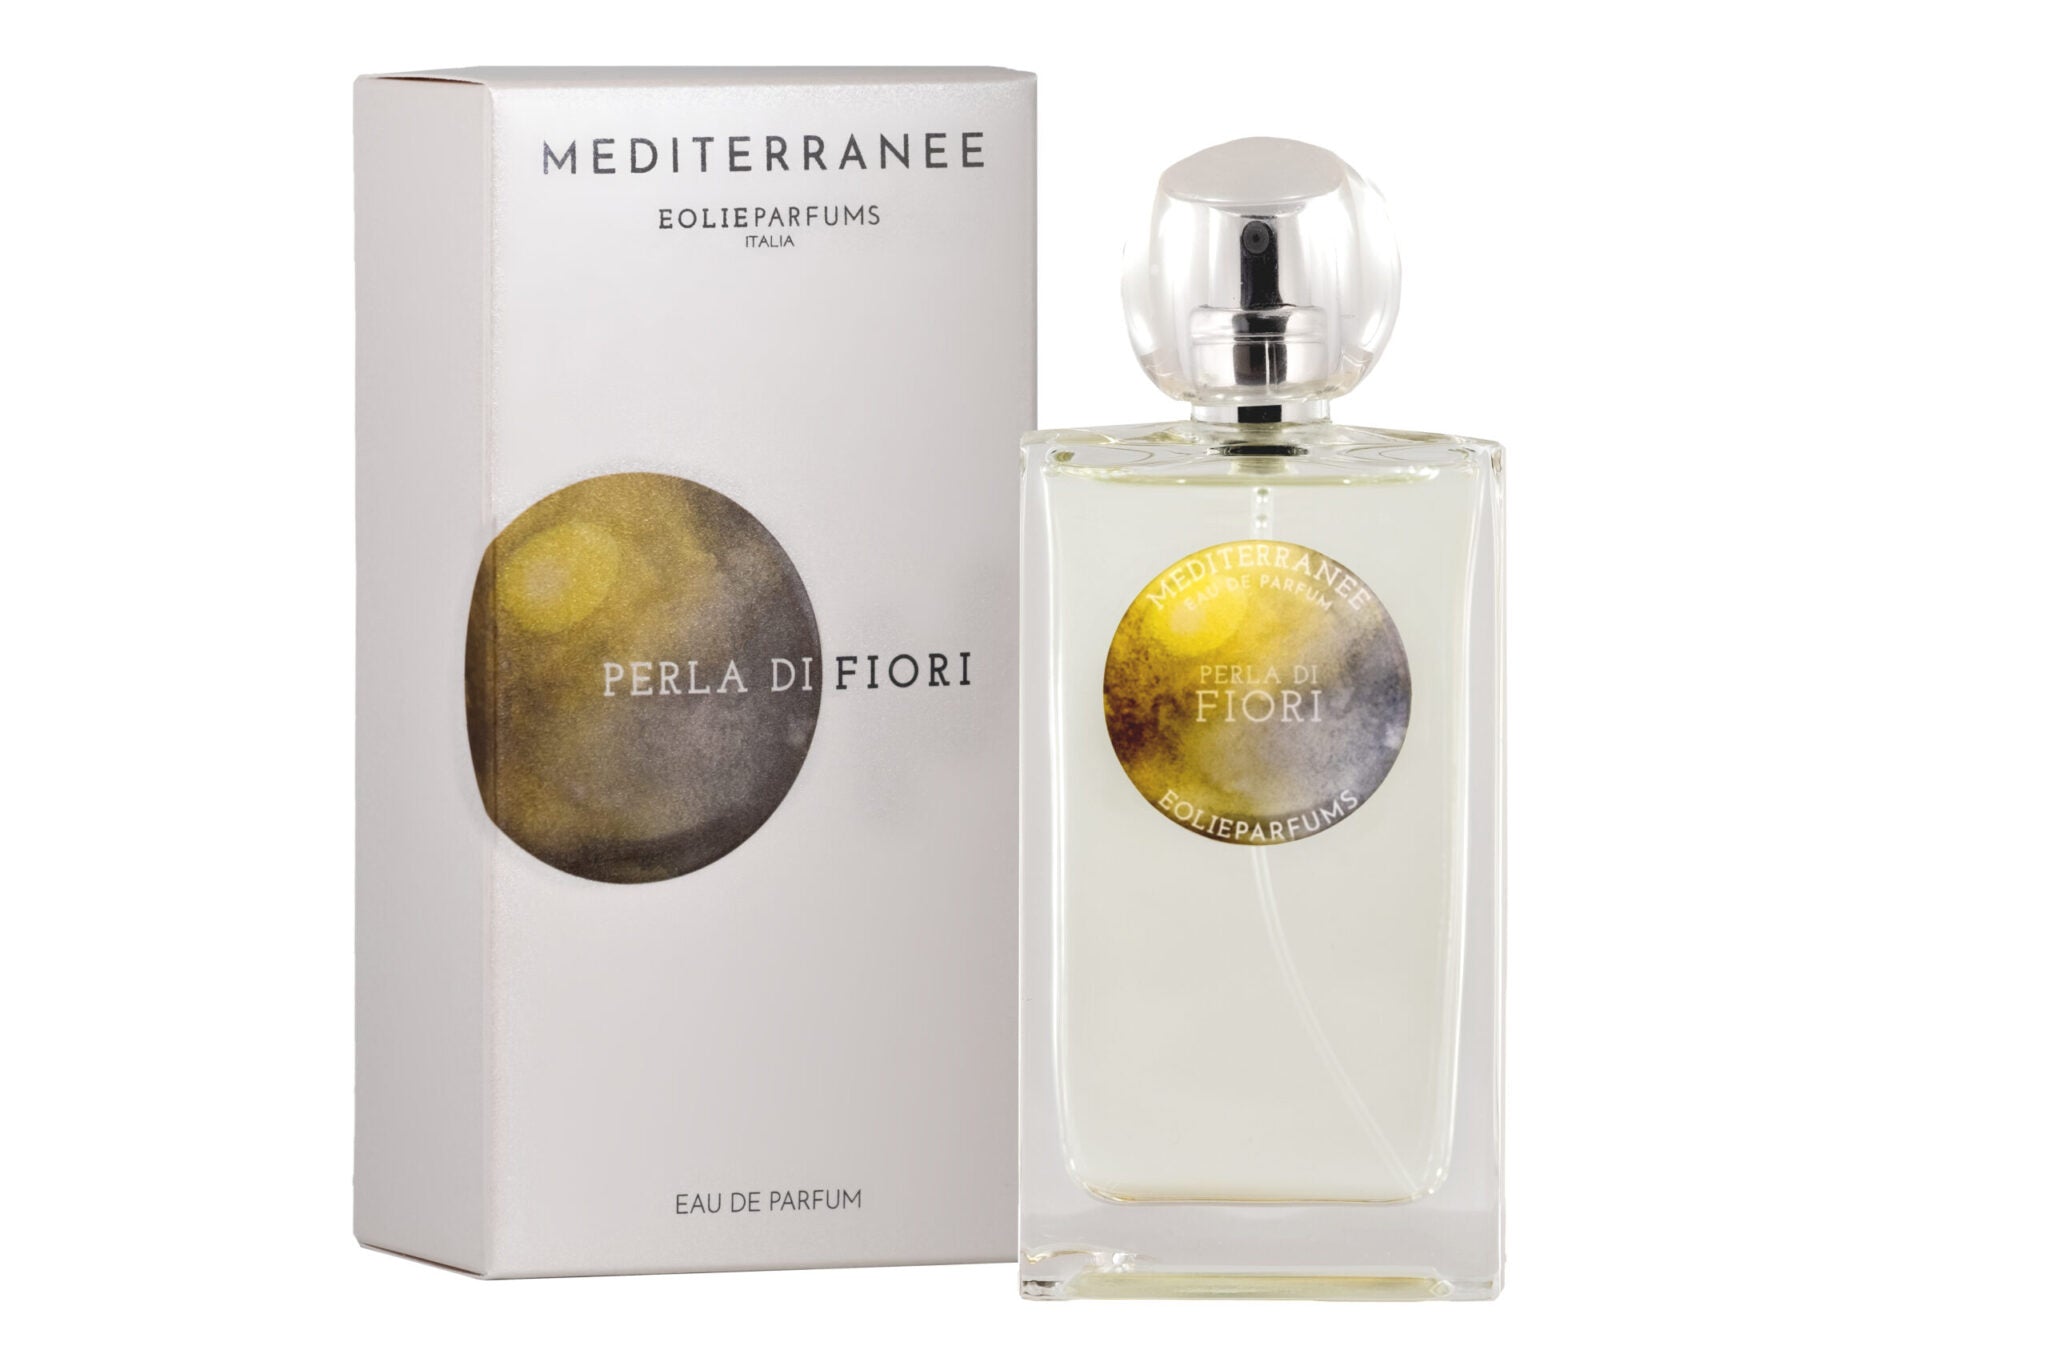 EolieParfums – Mediterranee – Pearl of Flowers